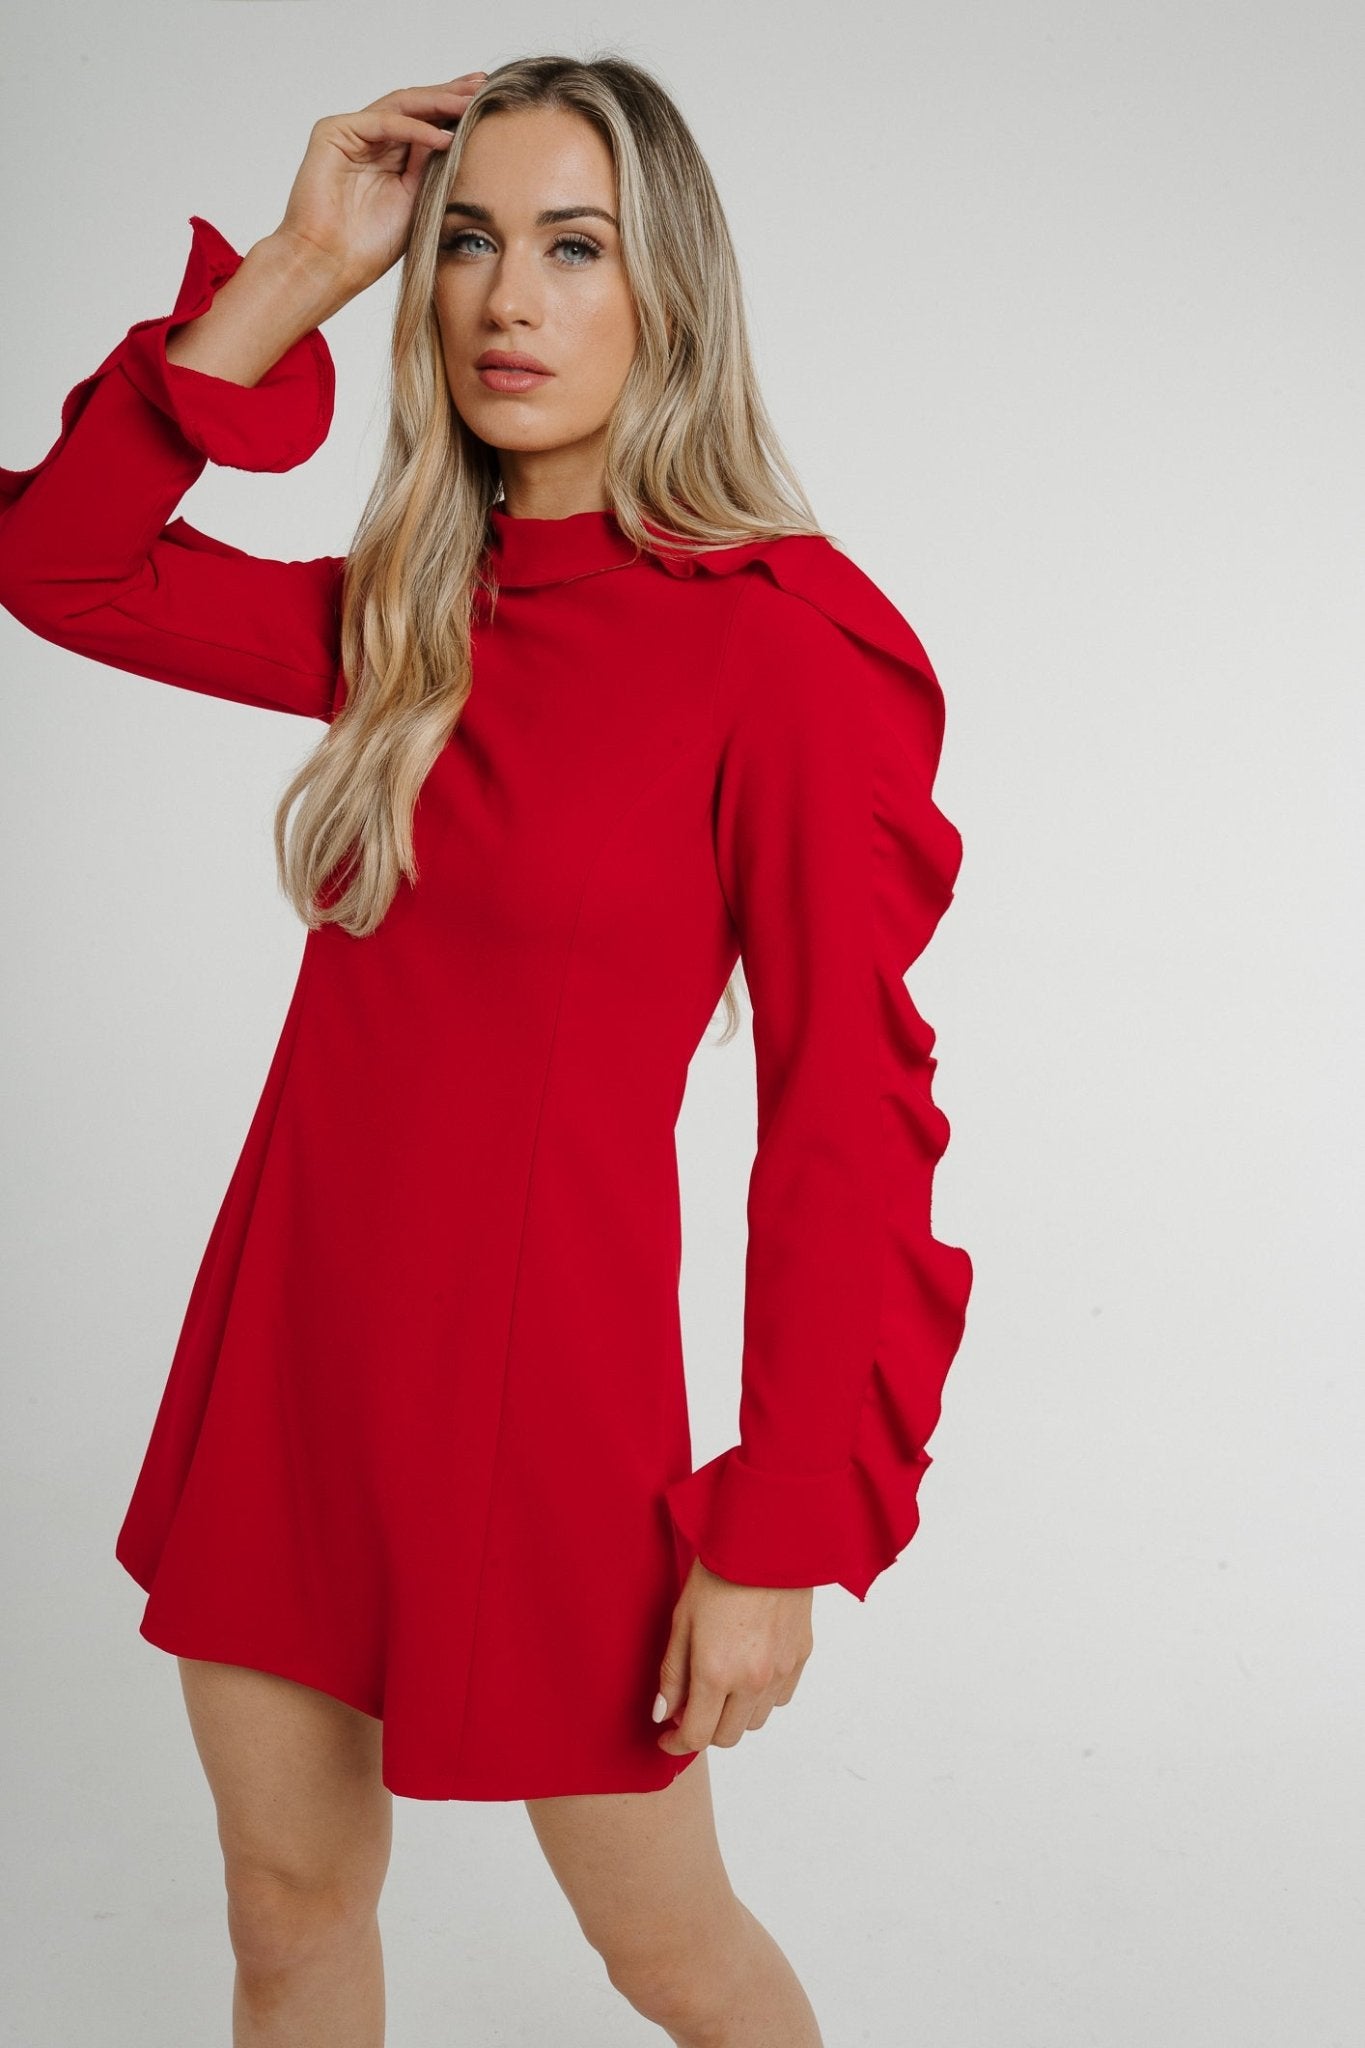 Sophia Frill Sleeve Dress In Red - The Walk in Wardrobe